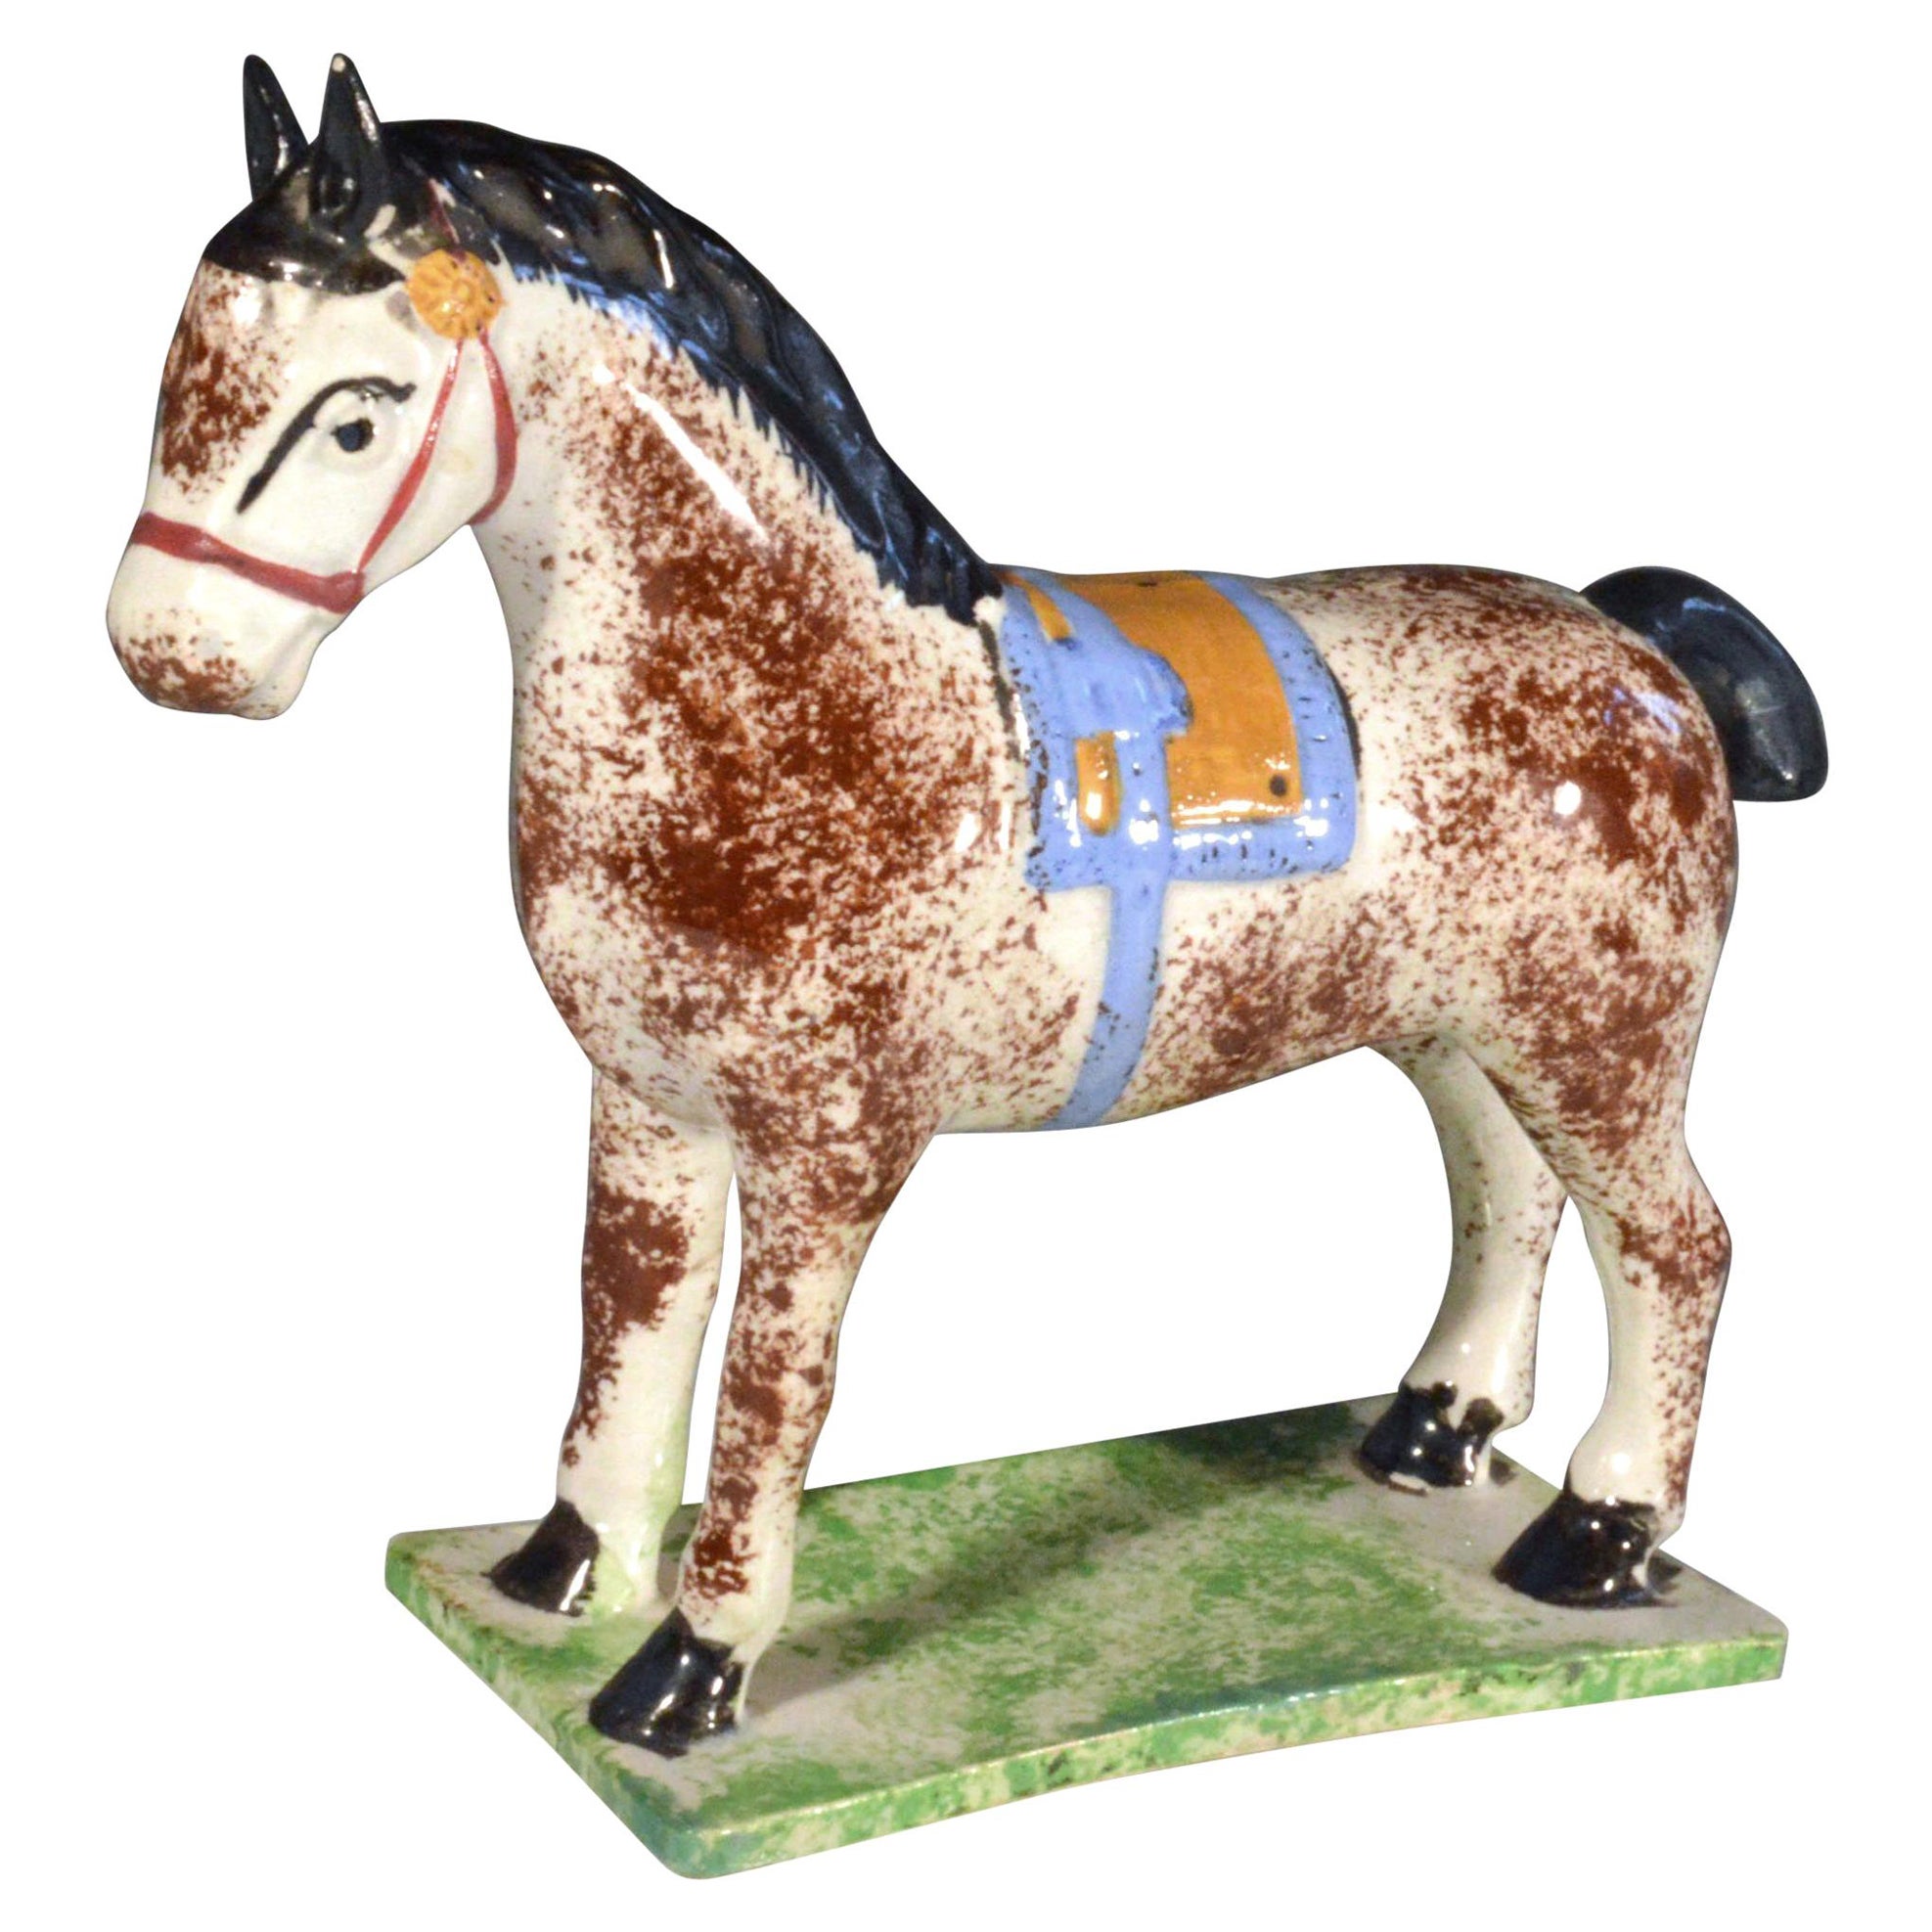 Newcastle Prattware Pottery-Modell eines Pferdes, zugeschrieben der St. Anthony Pottery